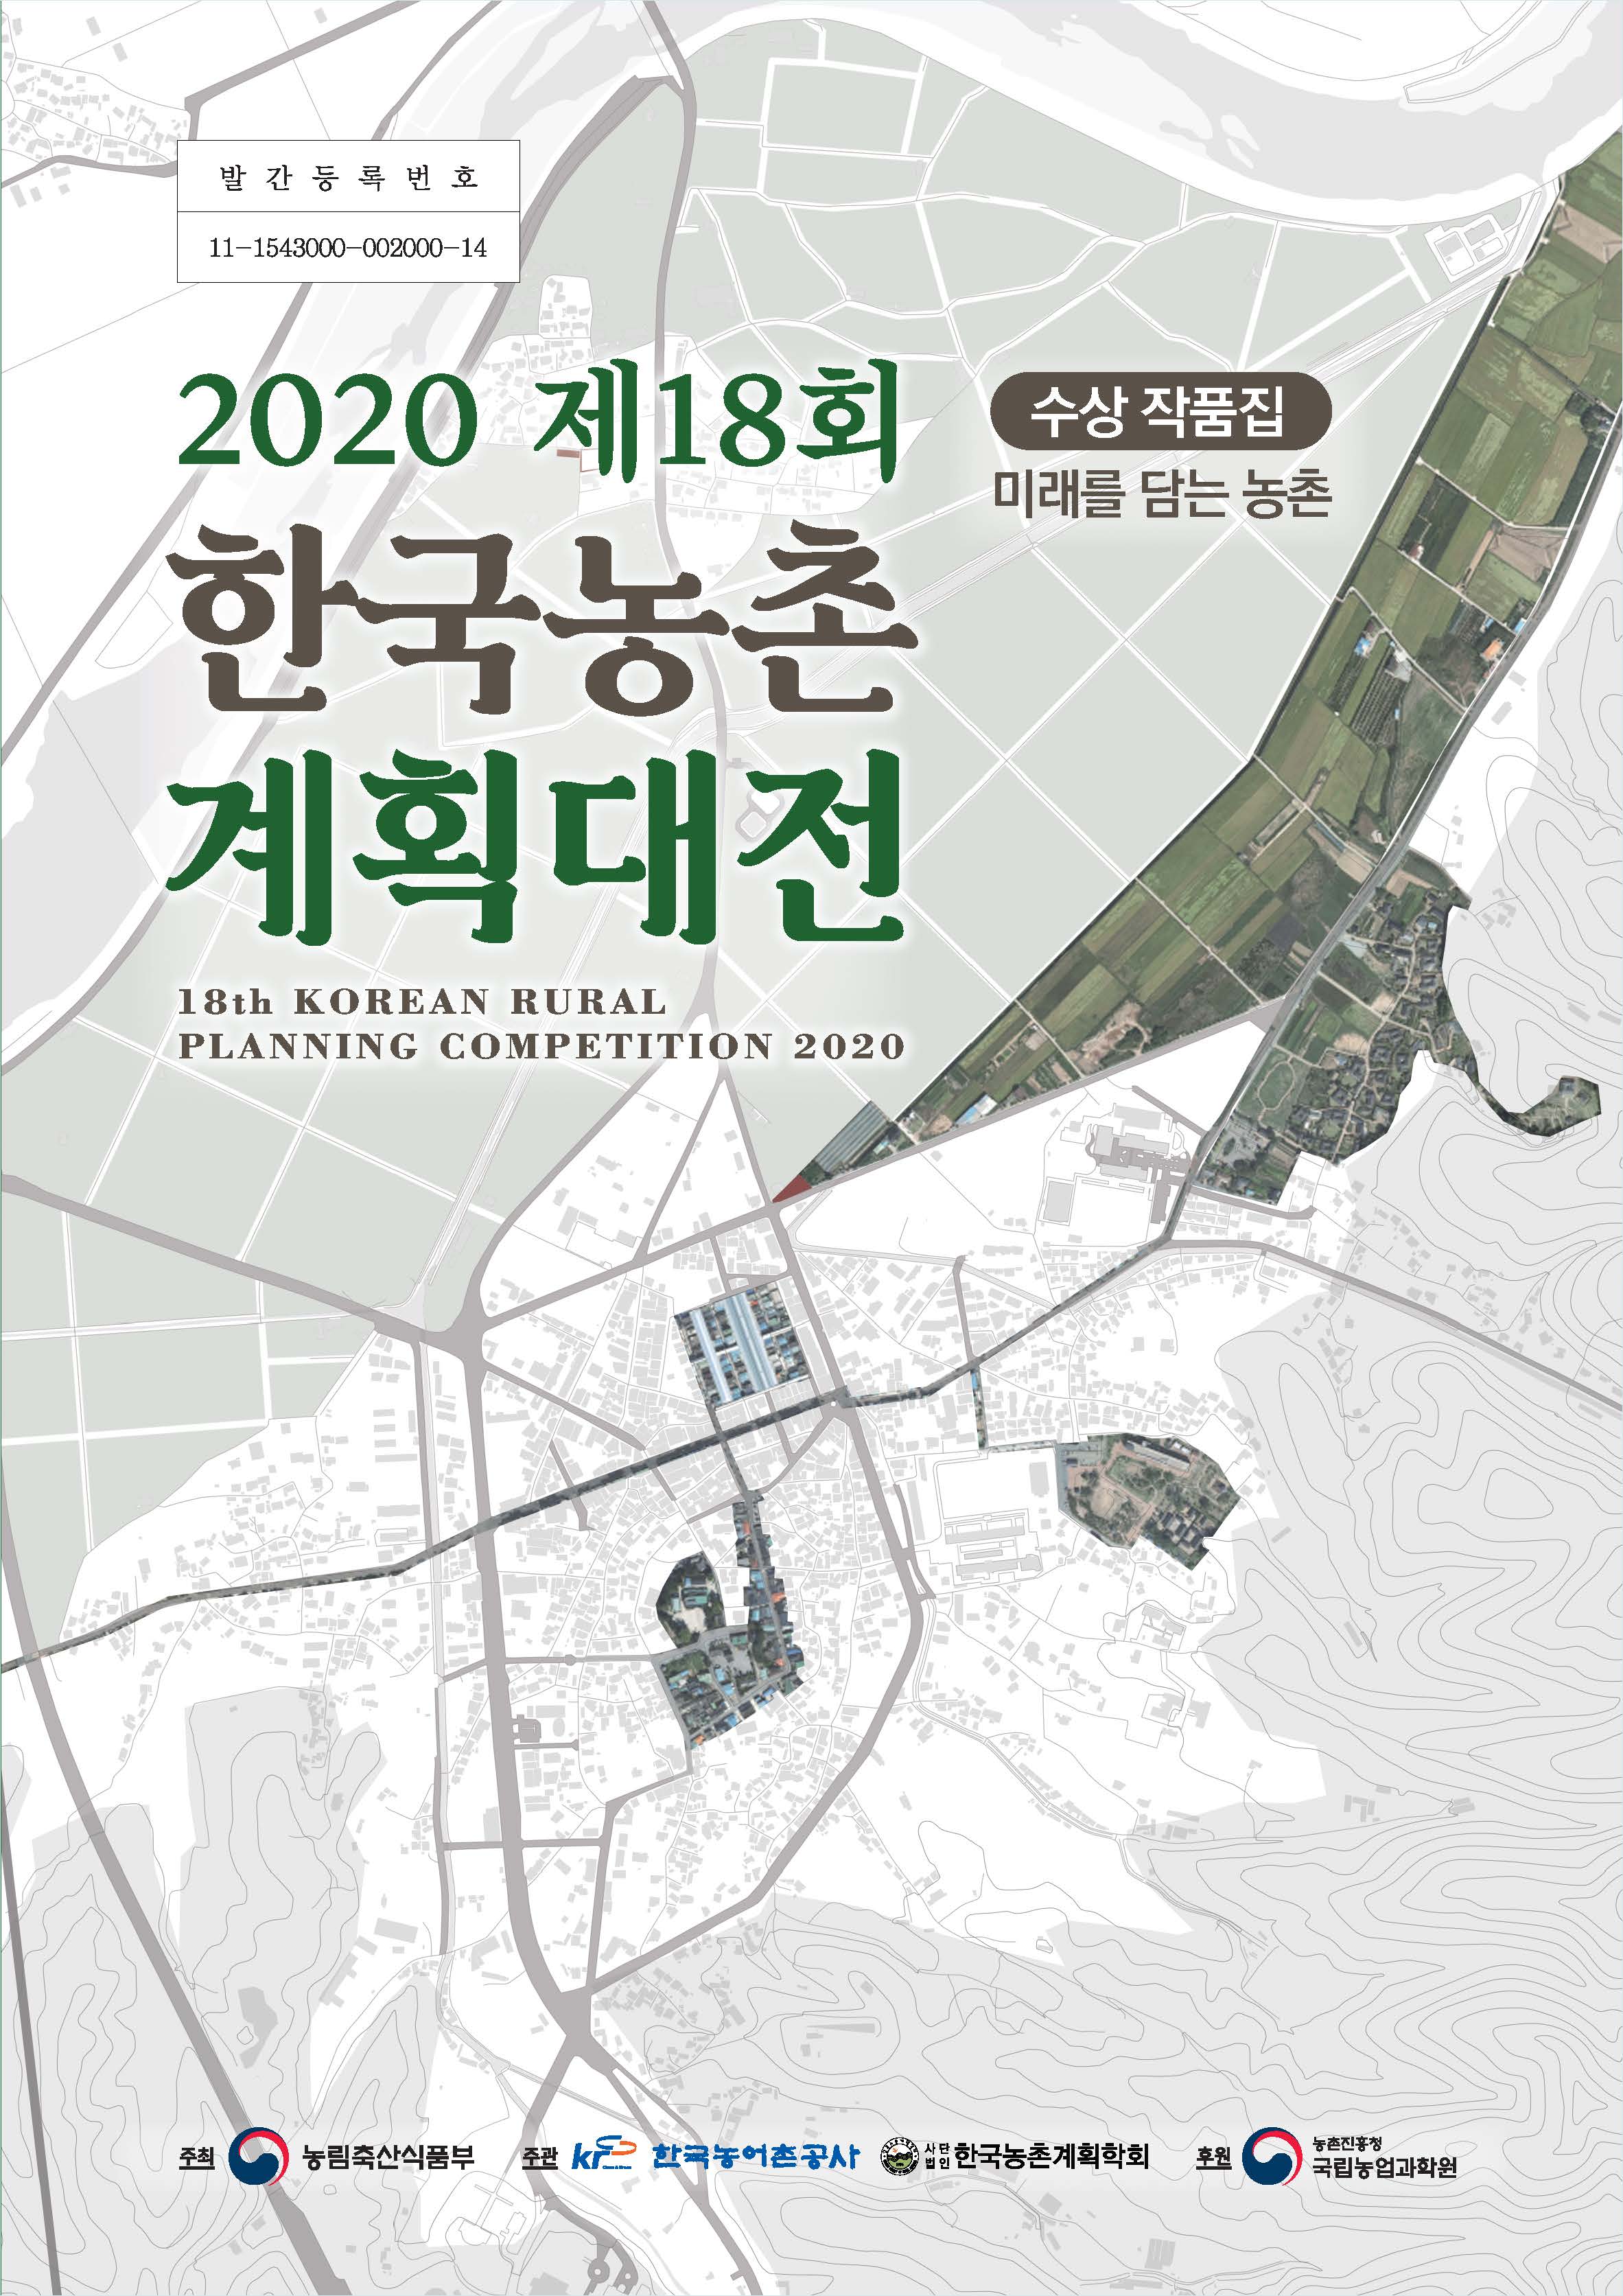 (2020년 제18회) 한국농촌 계획대전 : 수상작 작품집. 2020